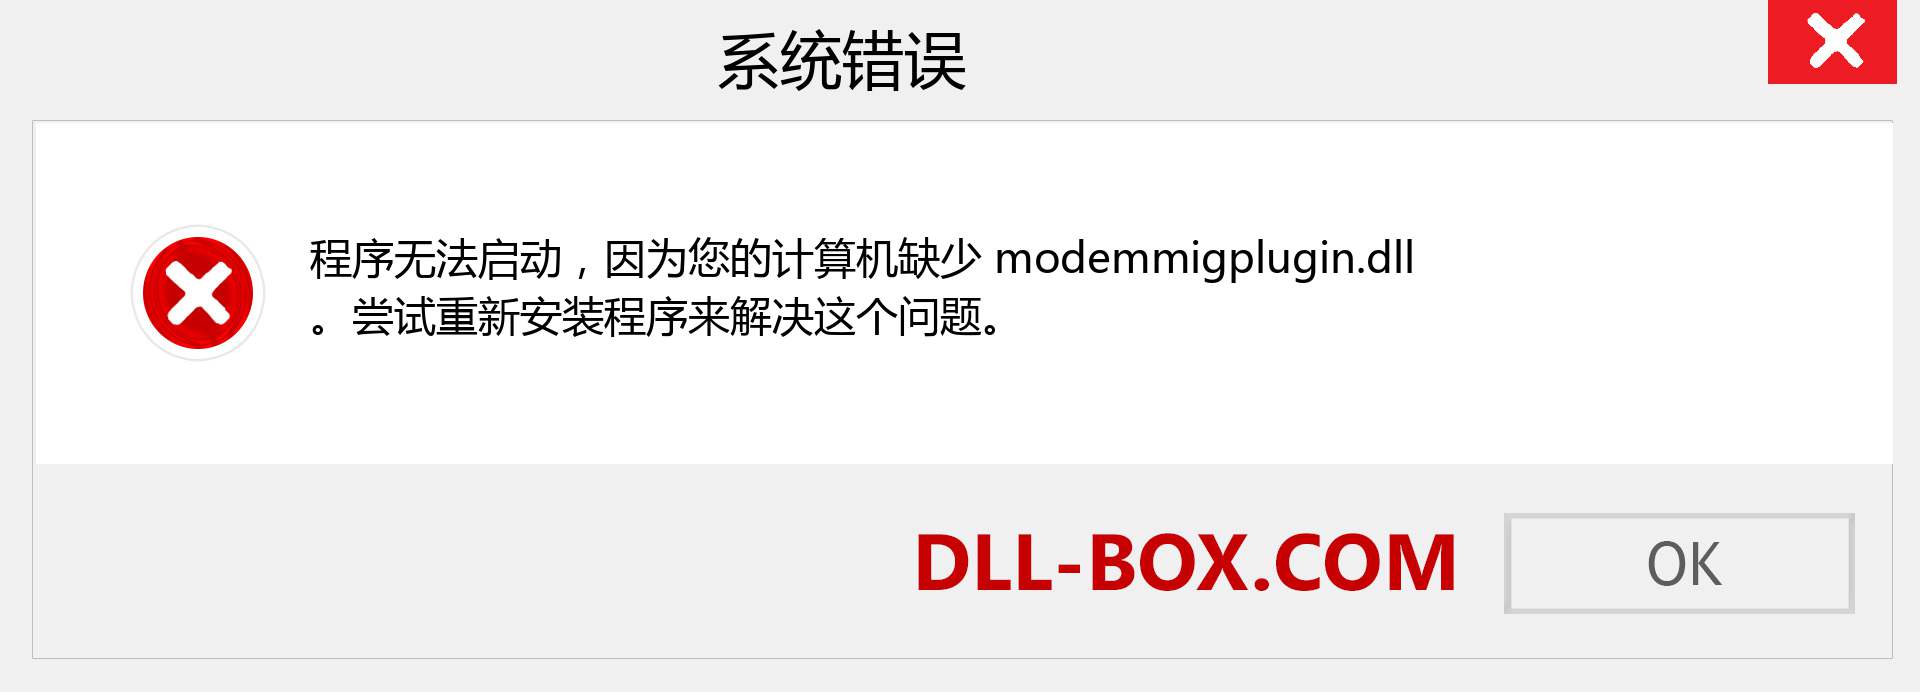 modemmigplugin.dll 文件丢失？。 适用于 Windows 7、8、10 的下载 - 修复 Windows、照片、图像上的 modemmigplugin dll 丢失错误